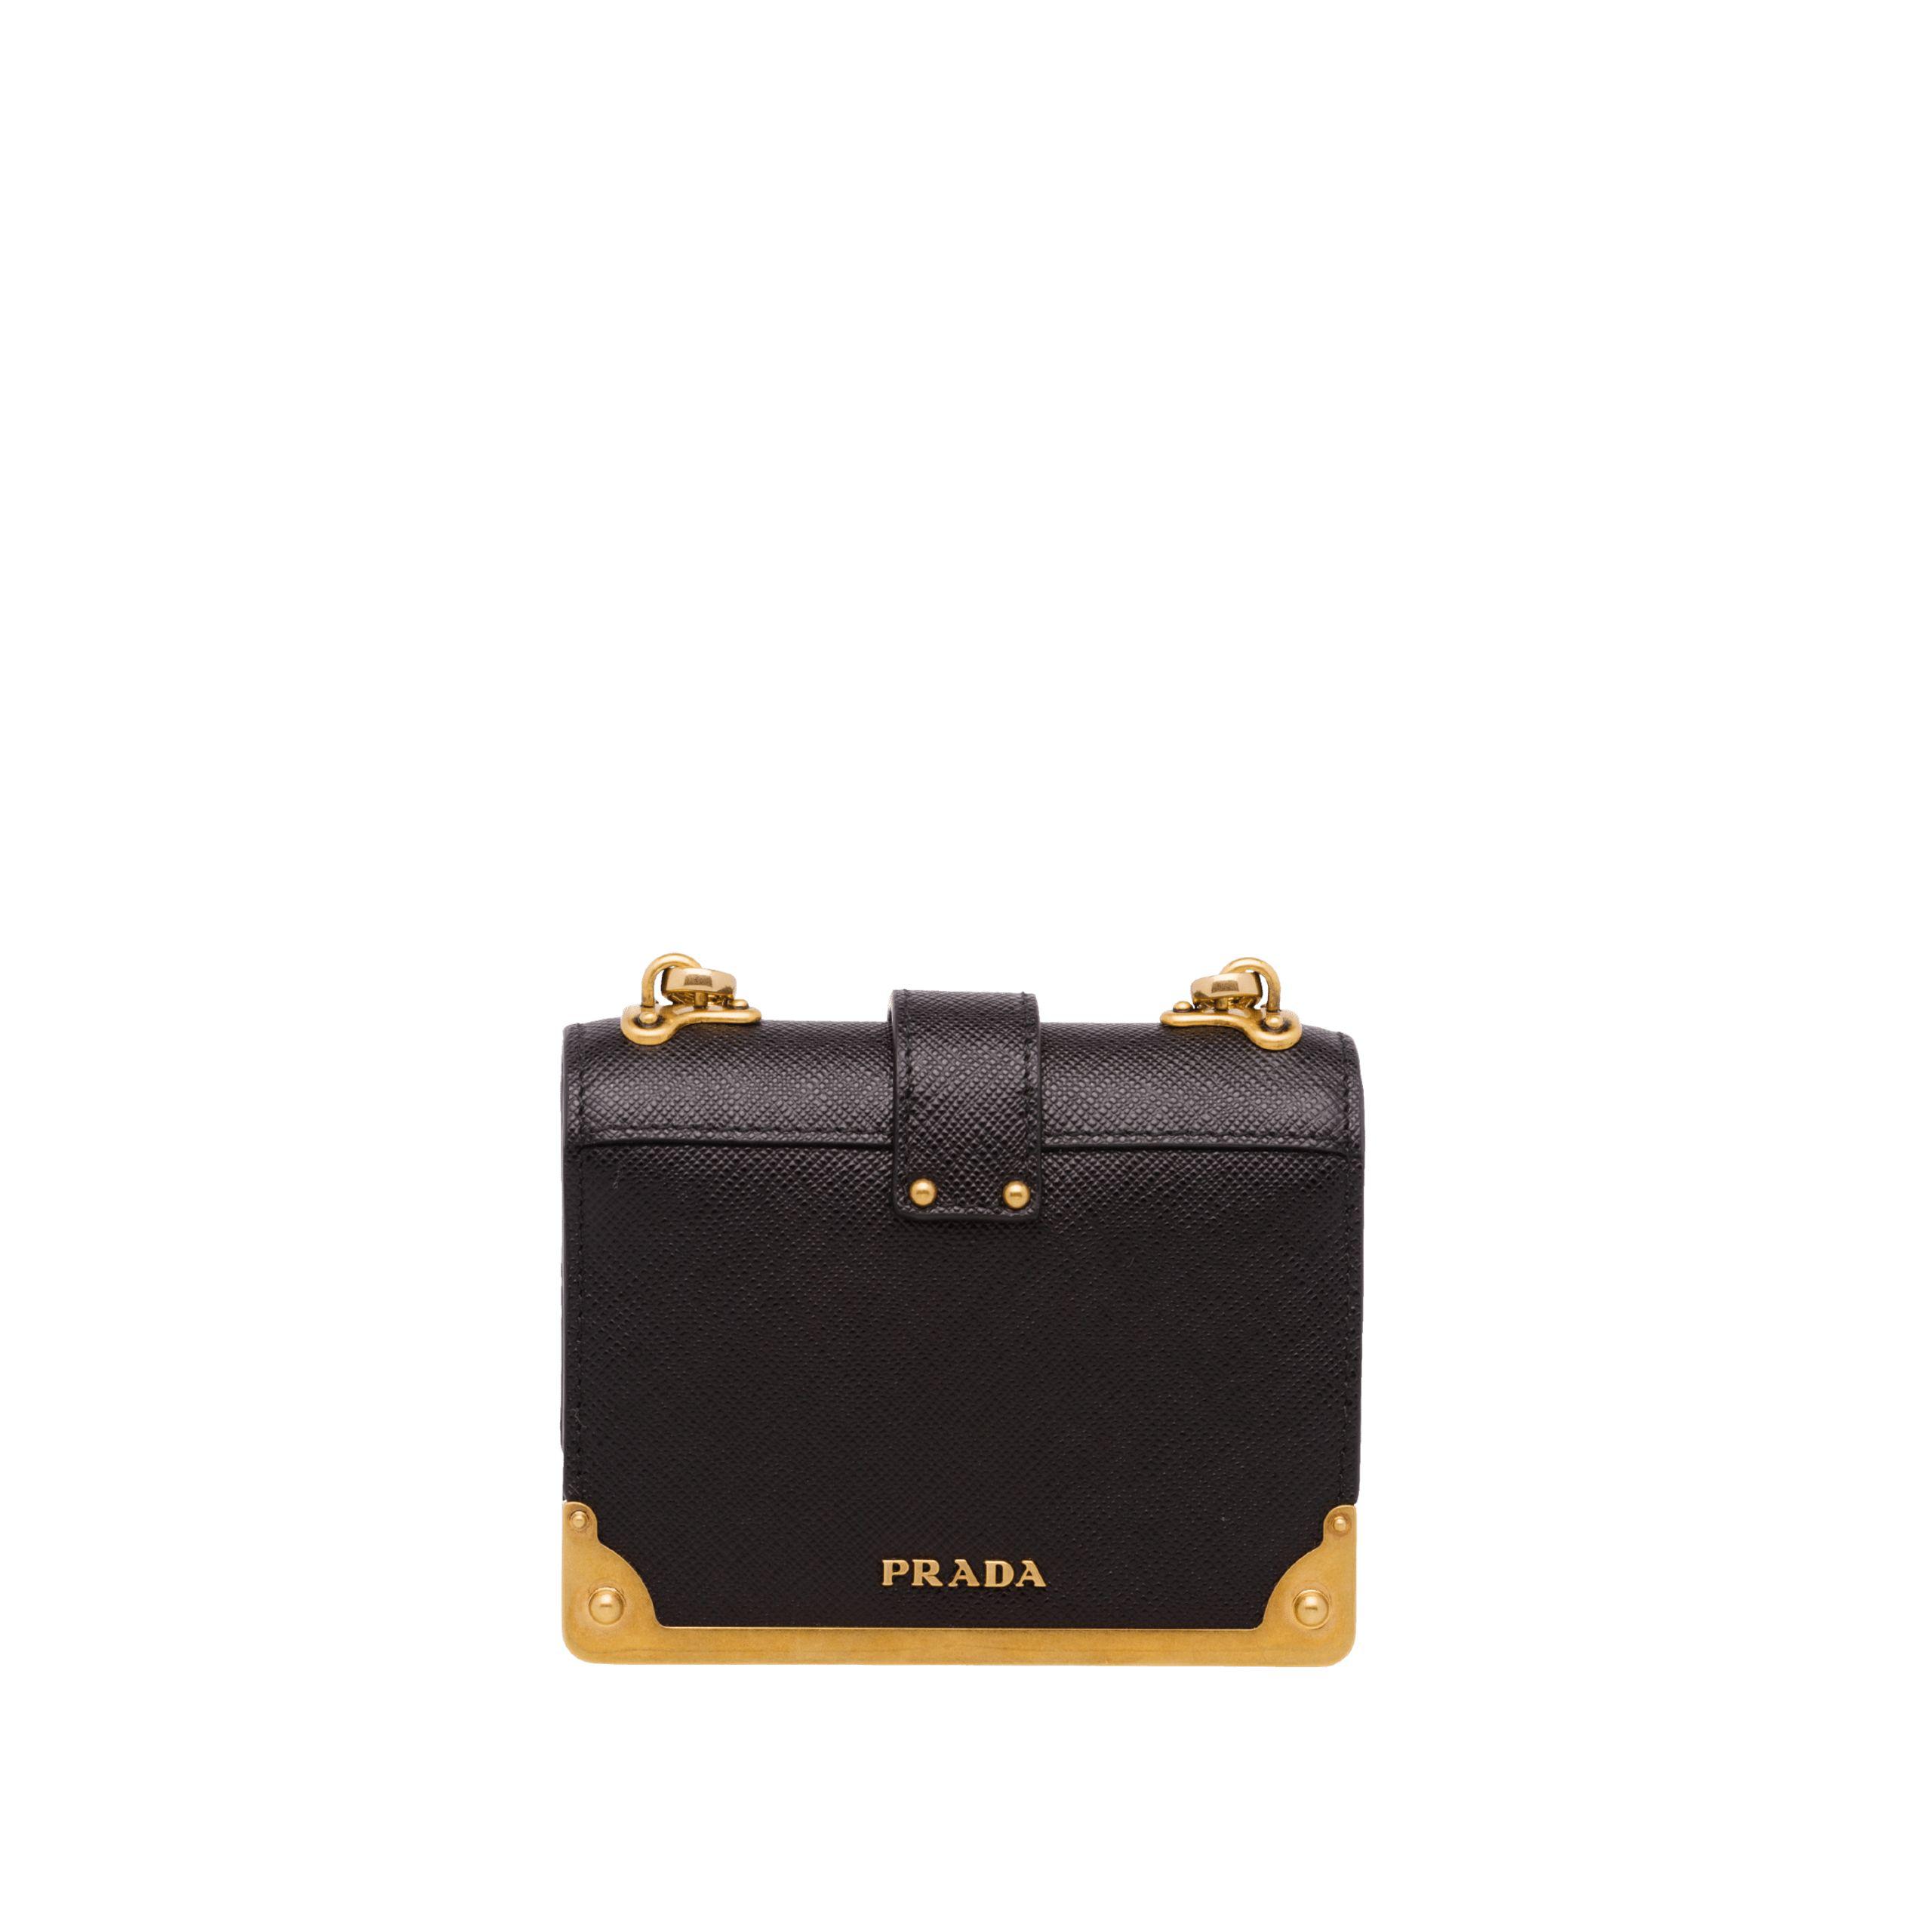 Prada Micro Cahier Bag in Black